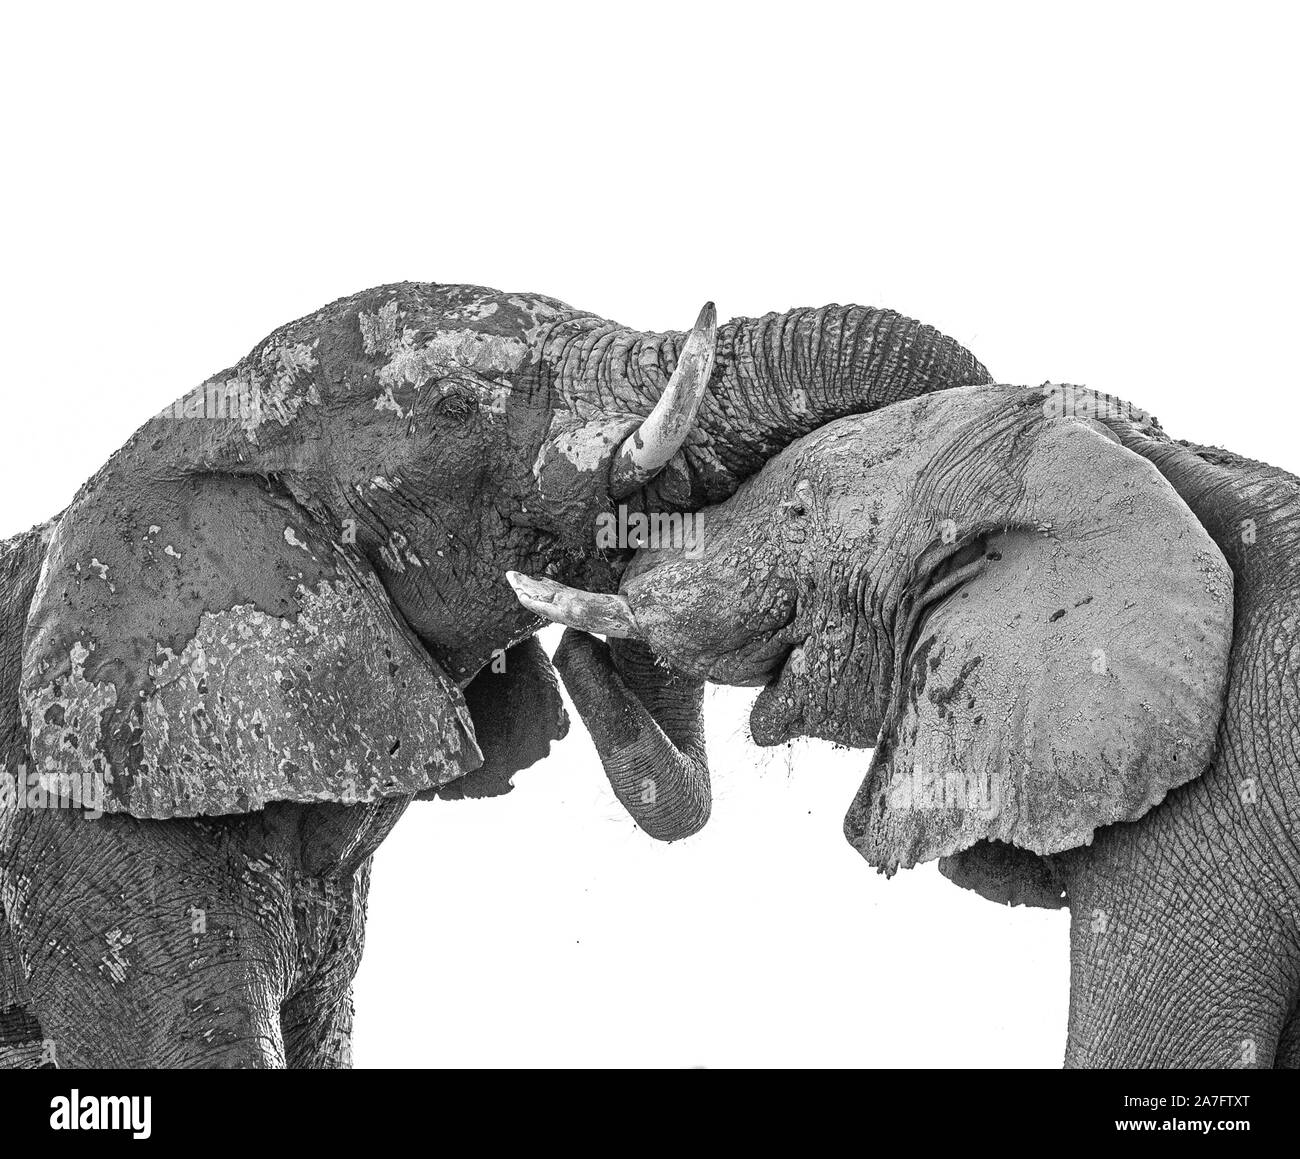 Una imagen en blanco y negro de dos elefantes interactuando con troncos sumergidos Foto de stock